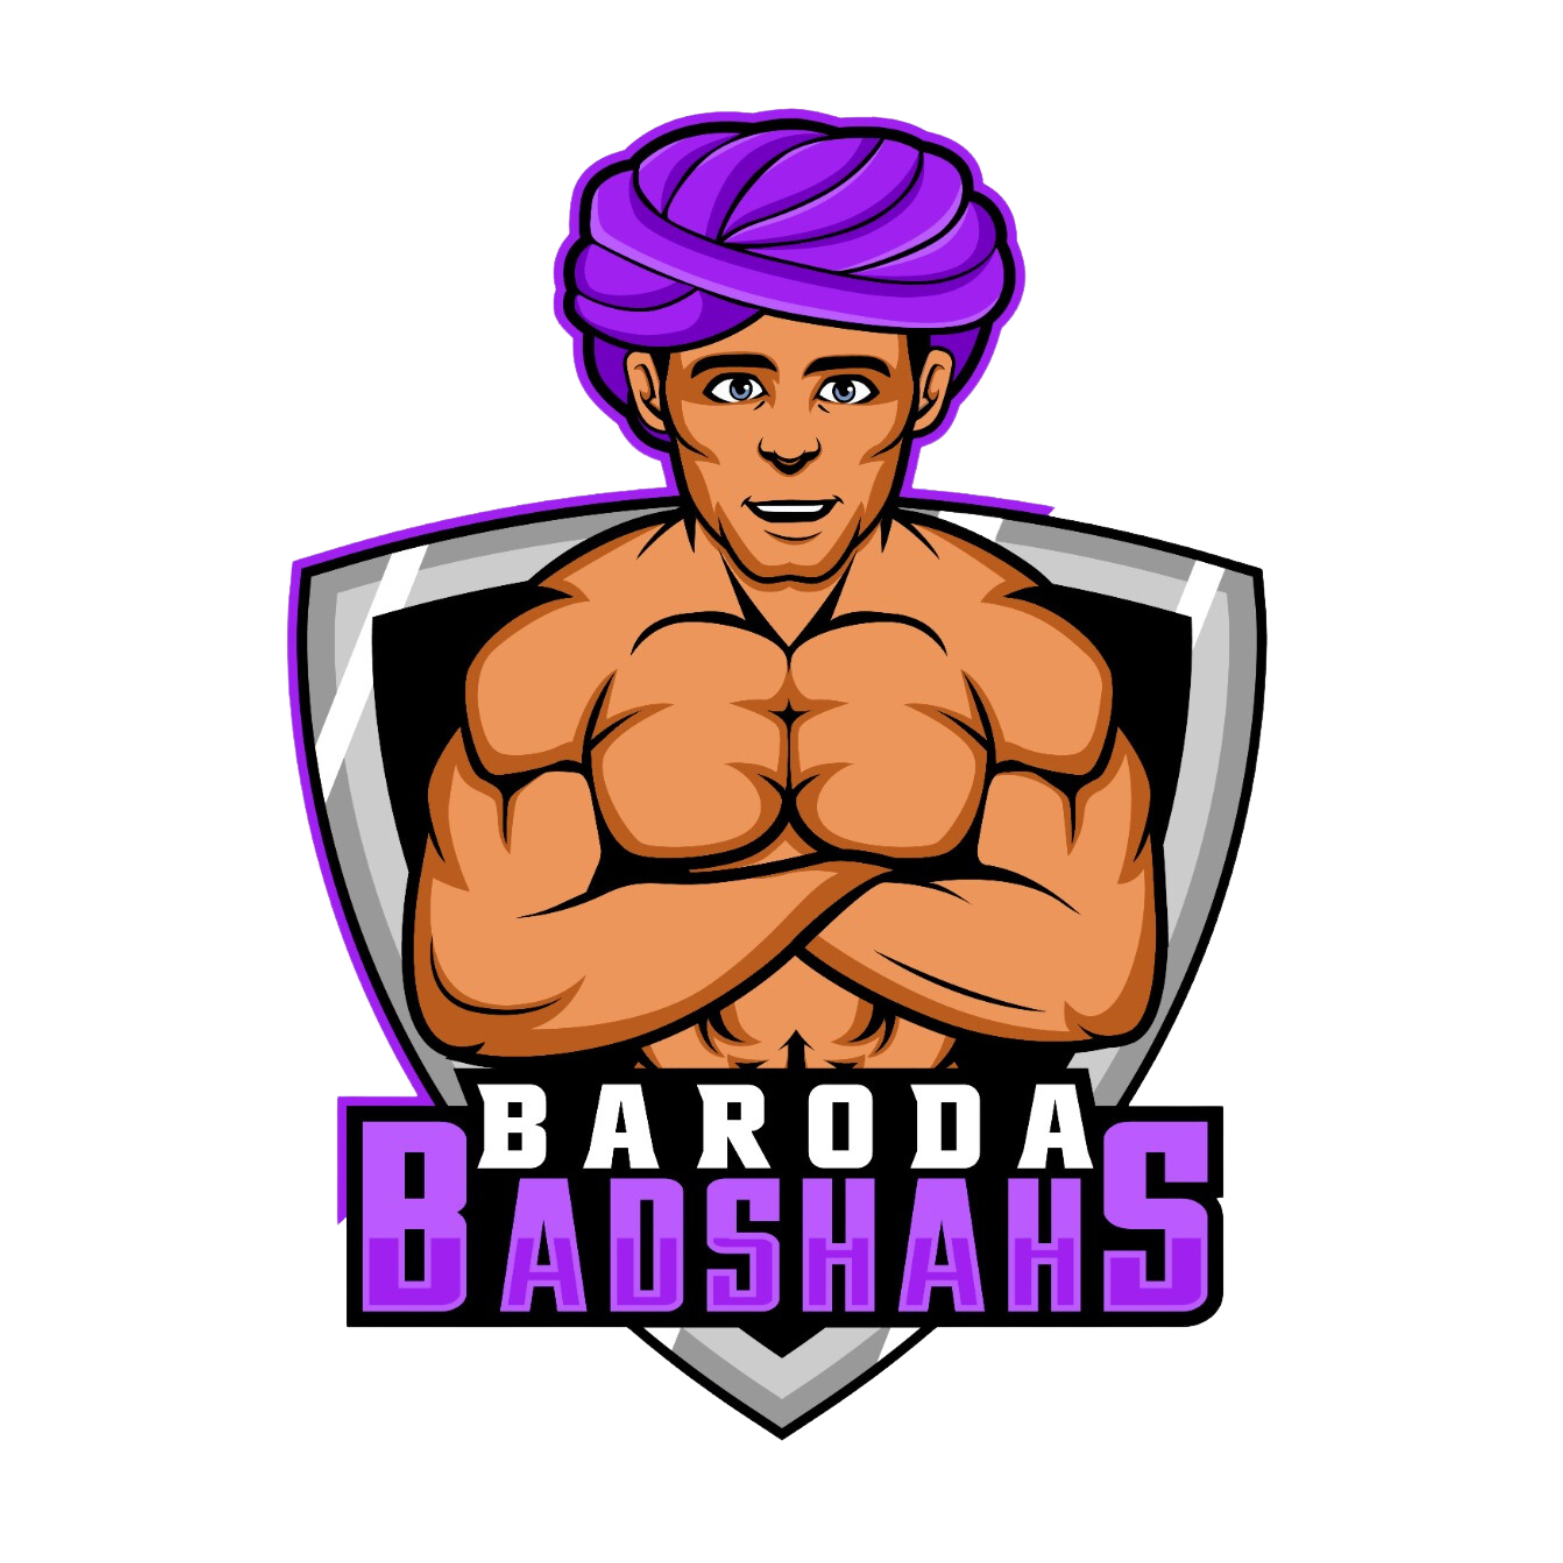 Baroda Badshahs